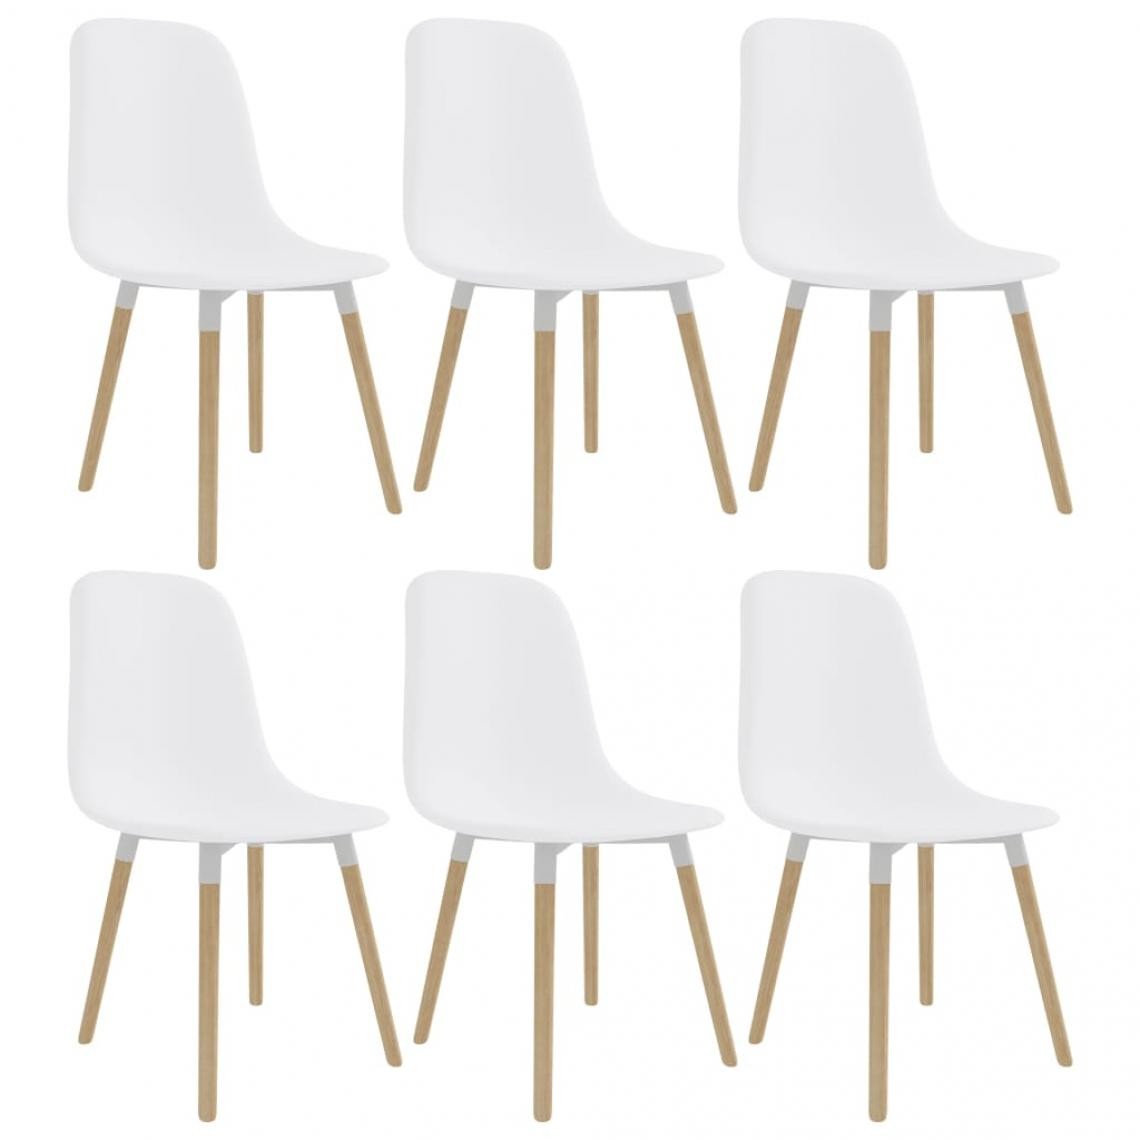 Decoshop26 - Lot de 6 chaises de salle à manger cuisine design élégant plastique blanc CDS022160 - Chaises